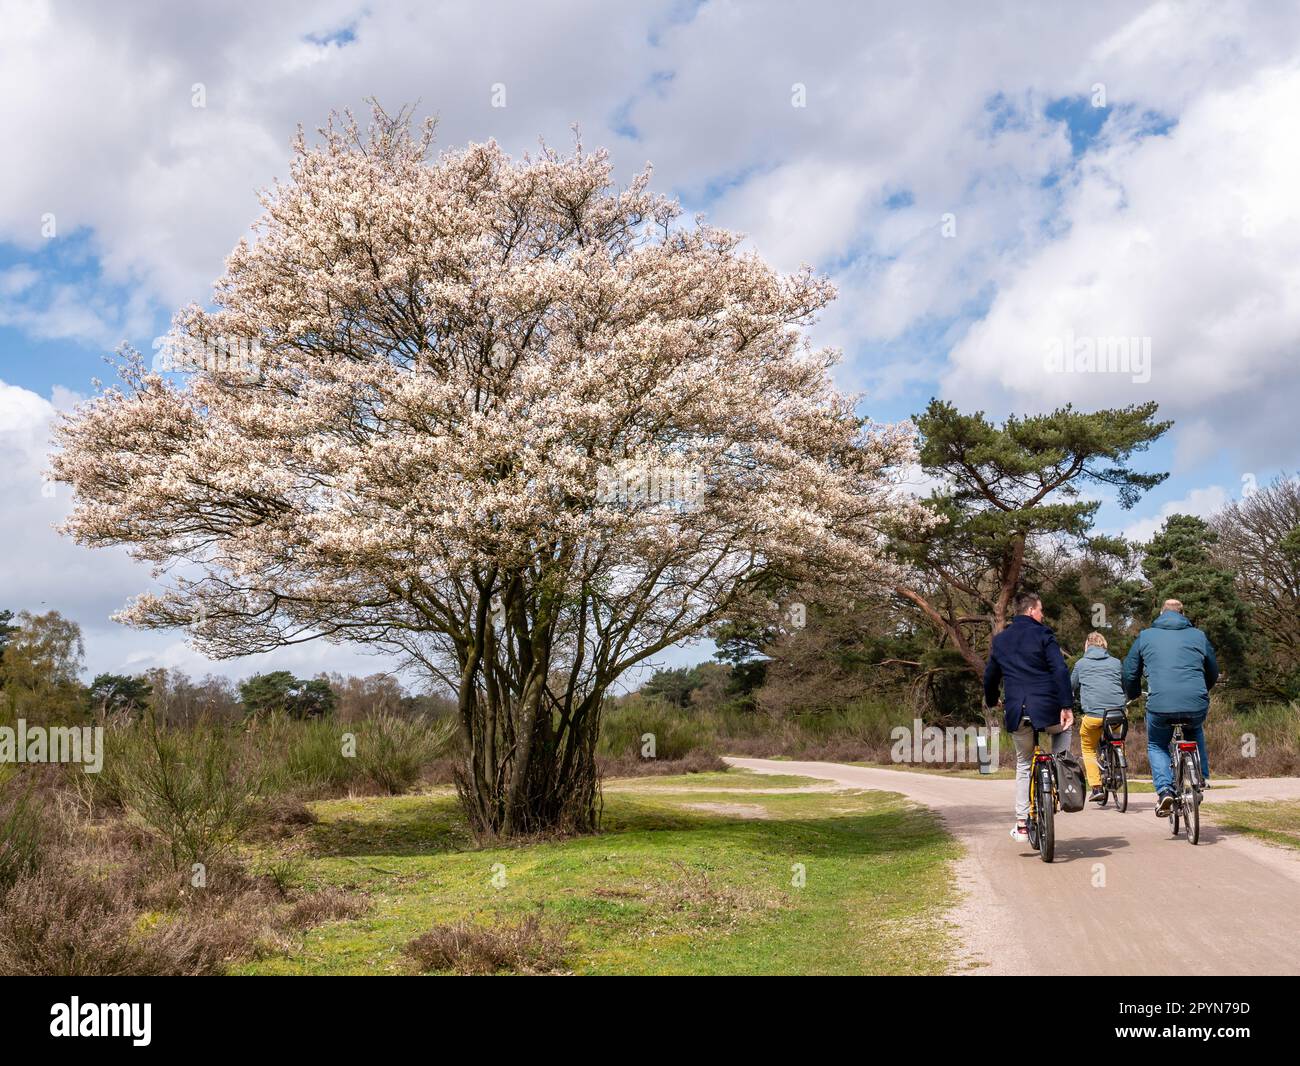 Fahrradfahrer fahren auf dem Radweg und Wacholderbeerbaum, Amelanchier Lamarkii, blüht im Frühling im Naturschutzgebiet, Niederlande Stockfoto